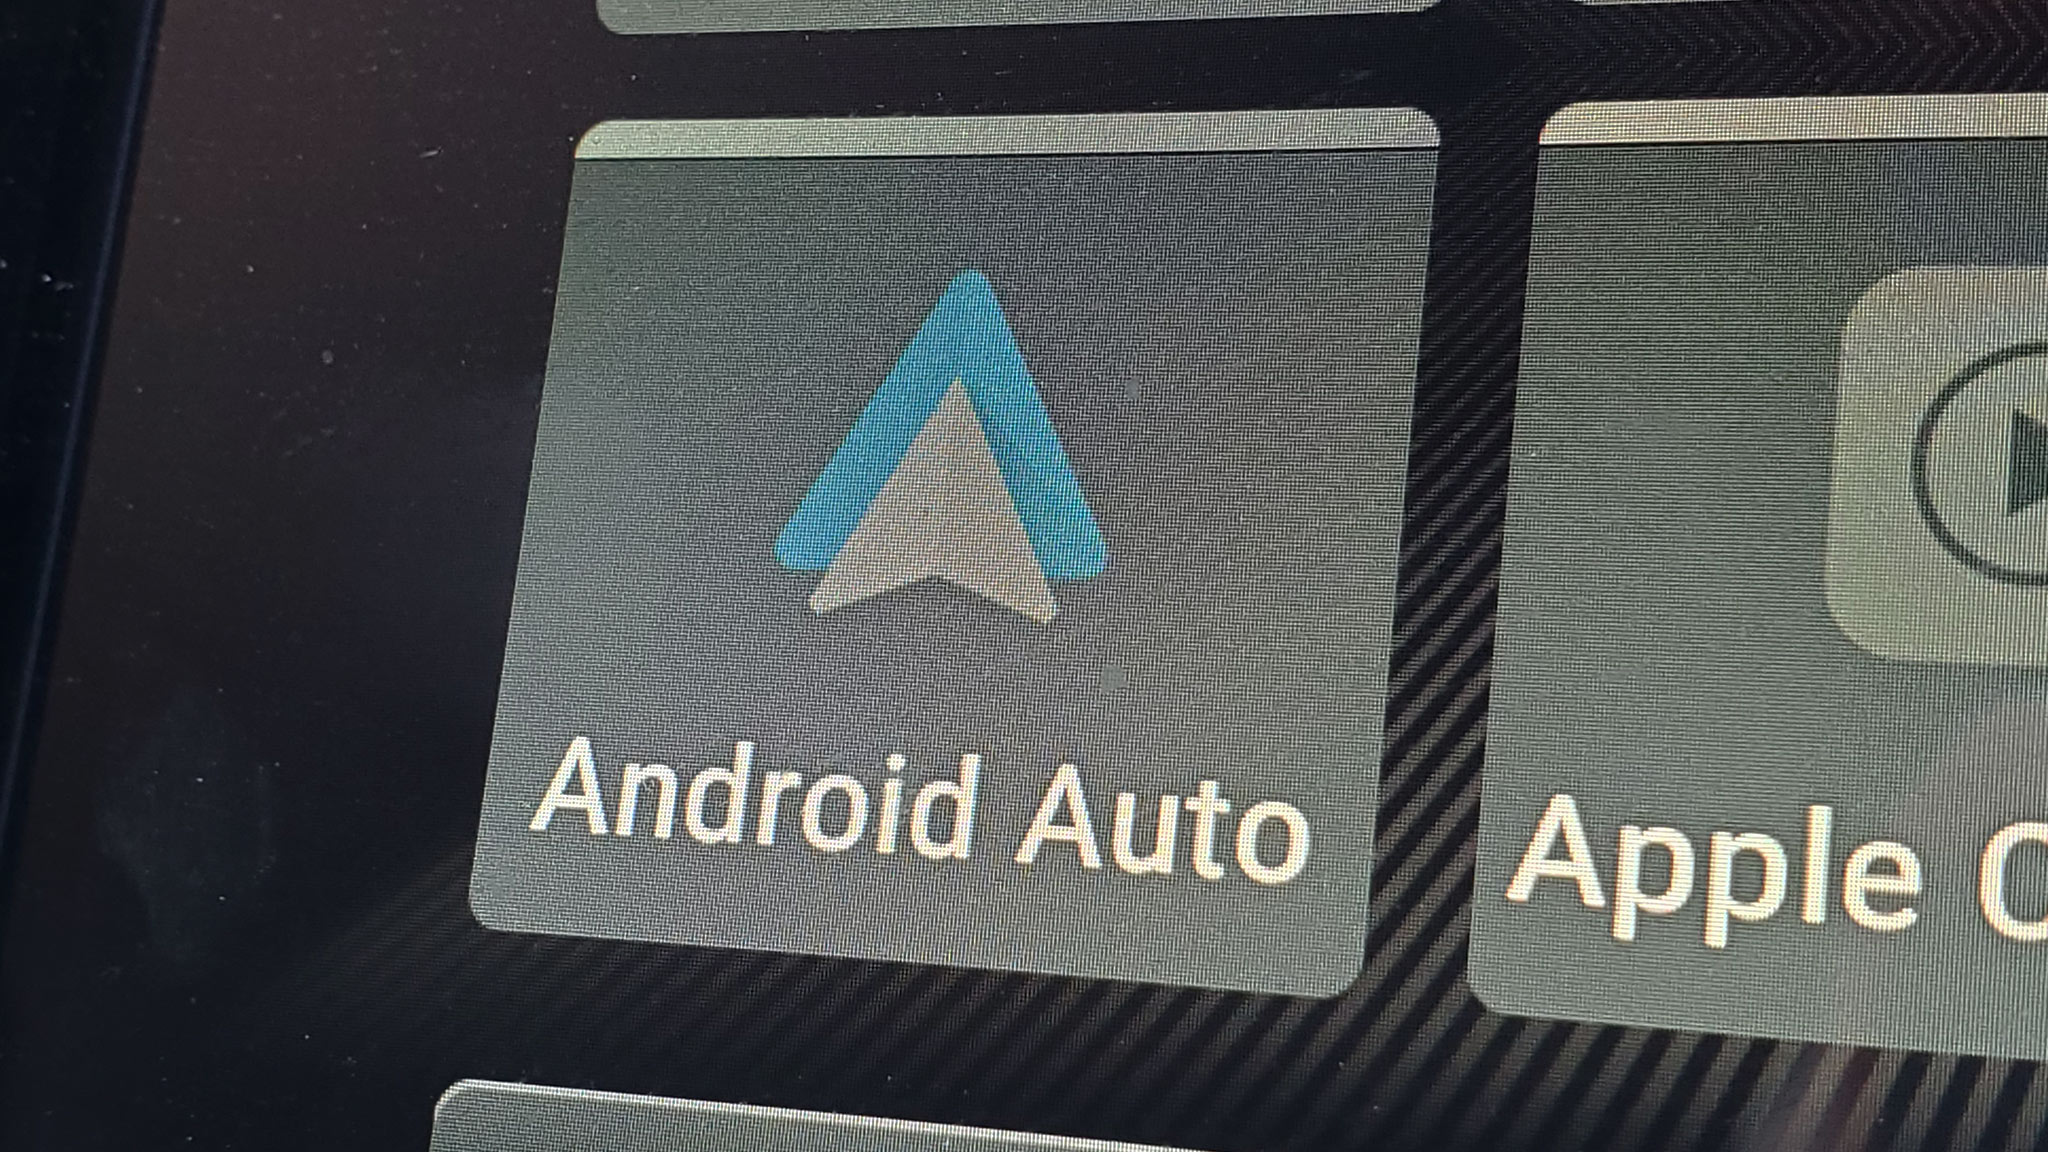 Fehler in Android Auto legt praktische Funktion lahm